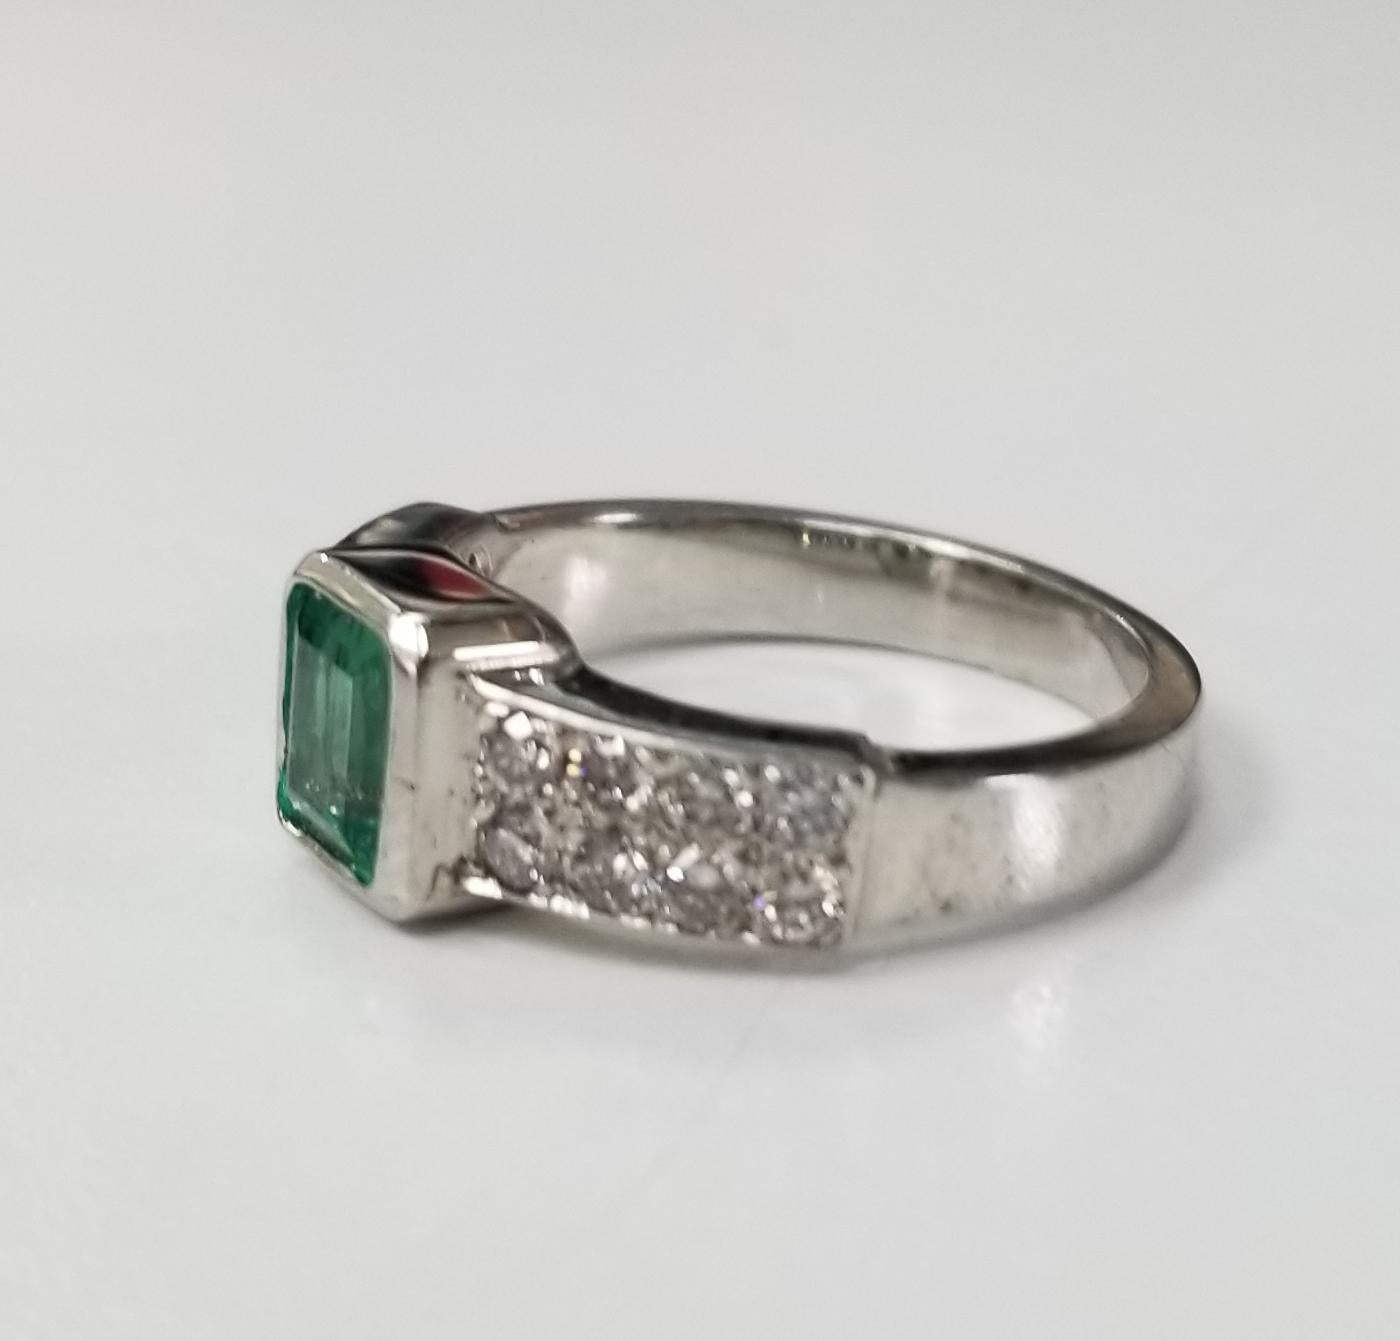 Smaragd- und Diamantring aus 14 Karat Weißgold, mit 1 Smaragd im Smaragdschliff mit einem Gewicht von 0,76 ct. und 16 runden Diamanten im Vollschliff von sehr guter Qualität mit einem Gewicht von 0,55 pt.  Dieser Ring ist eine Größe 6,5, aber wir